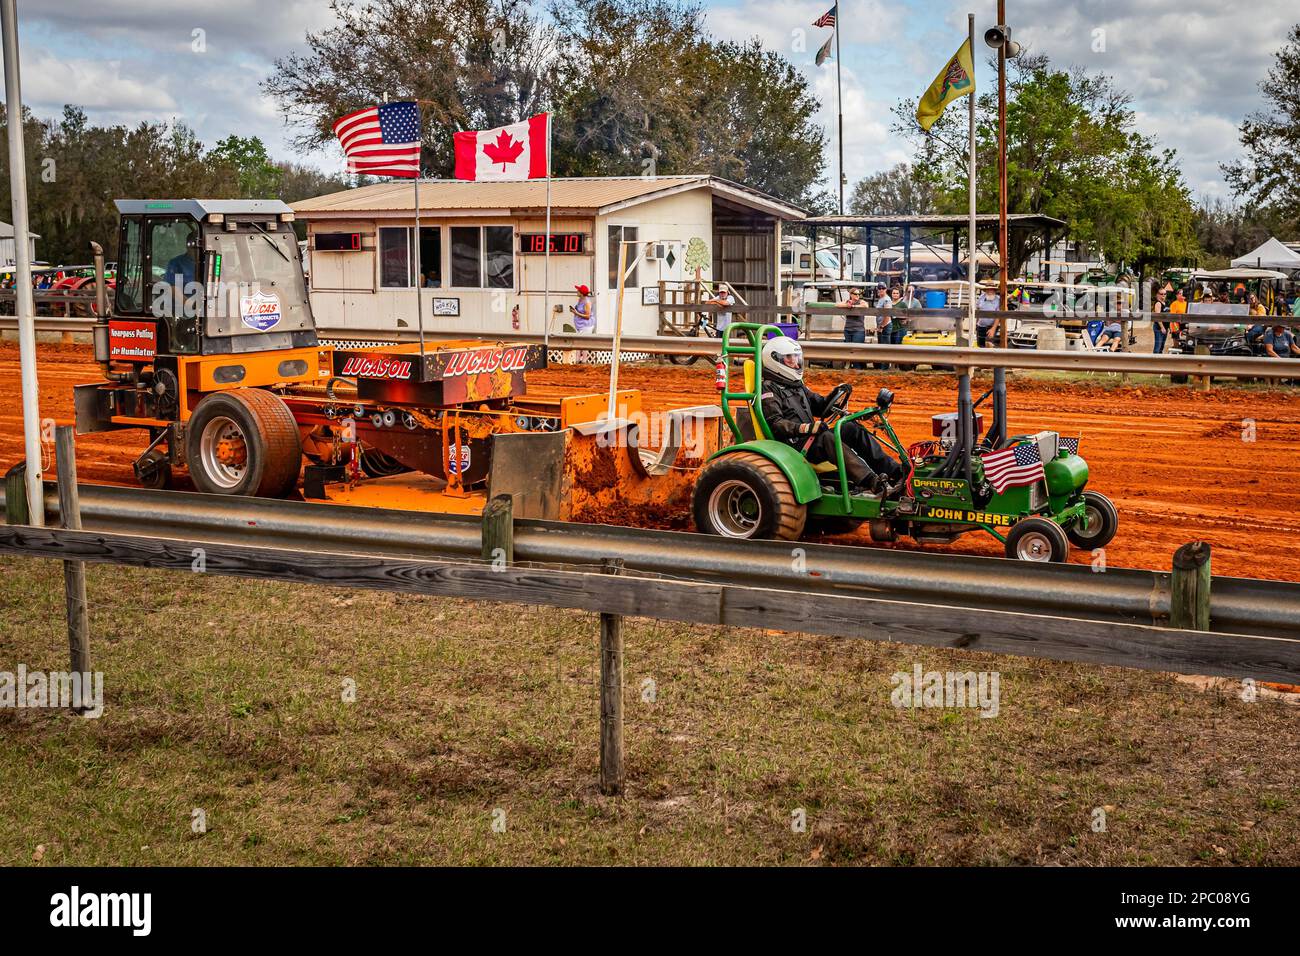 Fort Meade, FL - 26 febbraio 2022: Vista grandangolare dell'angolo anteriore di un estrattore per mini trattori John Deere modificato in occasione di una competizione di traino di trattori locali. Foto Stock